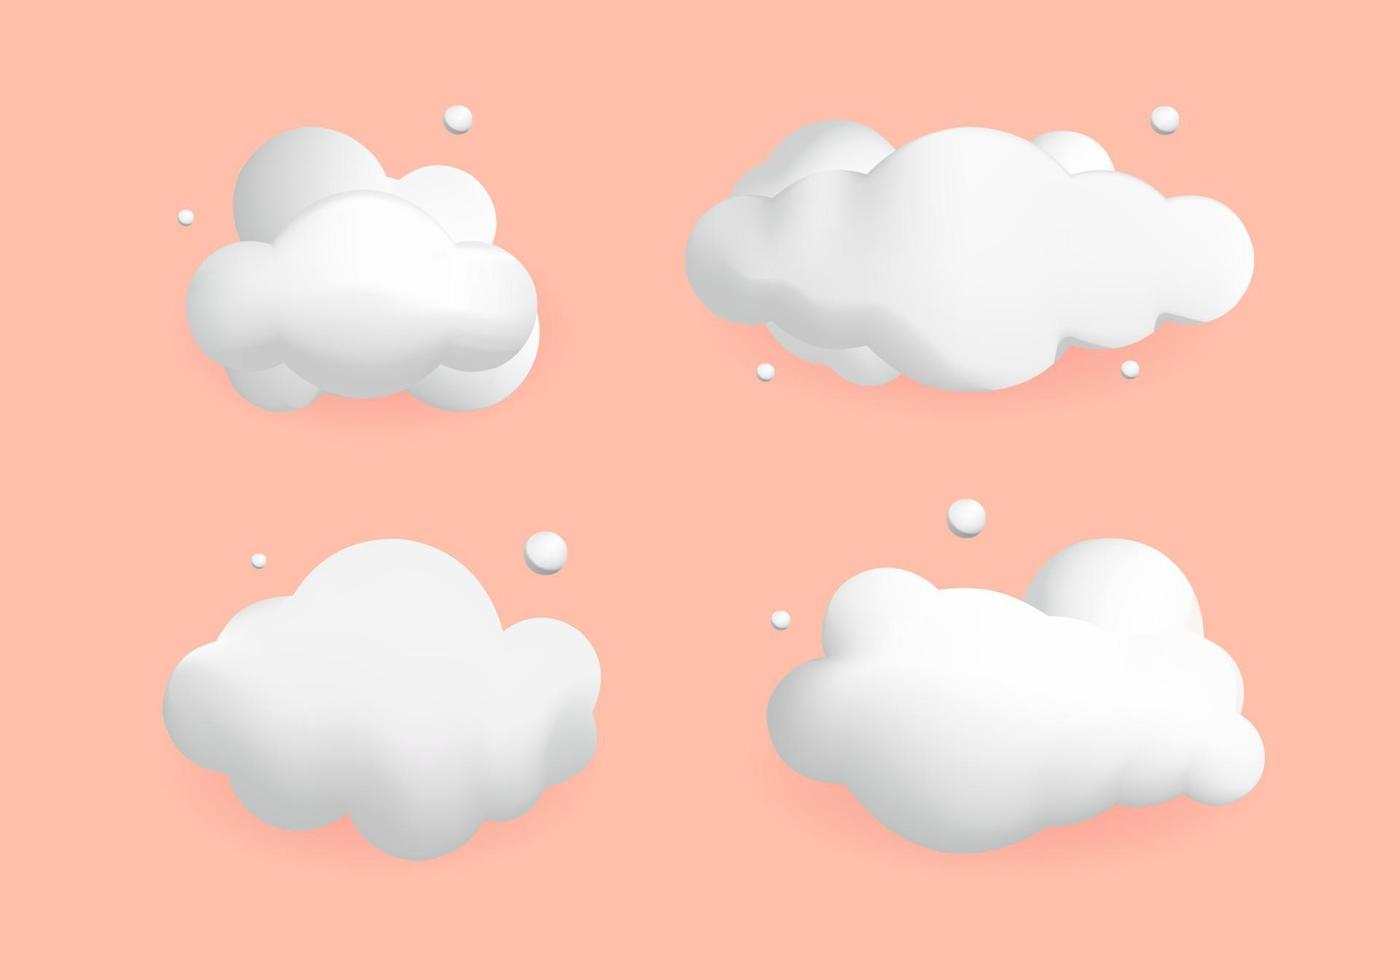 Diseño de nube blanca en 3D. decoraciones de vectores de estilo lindo